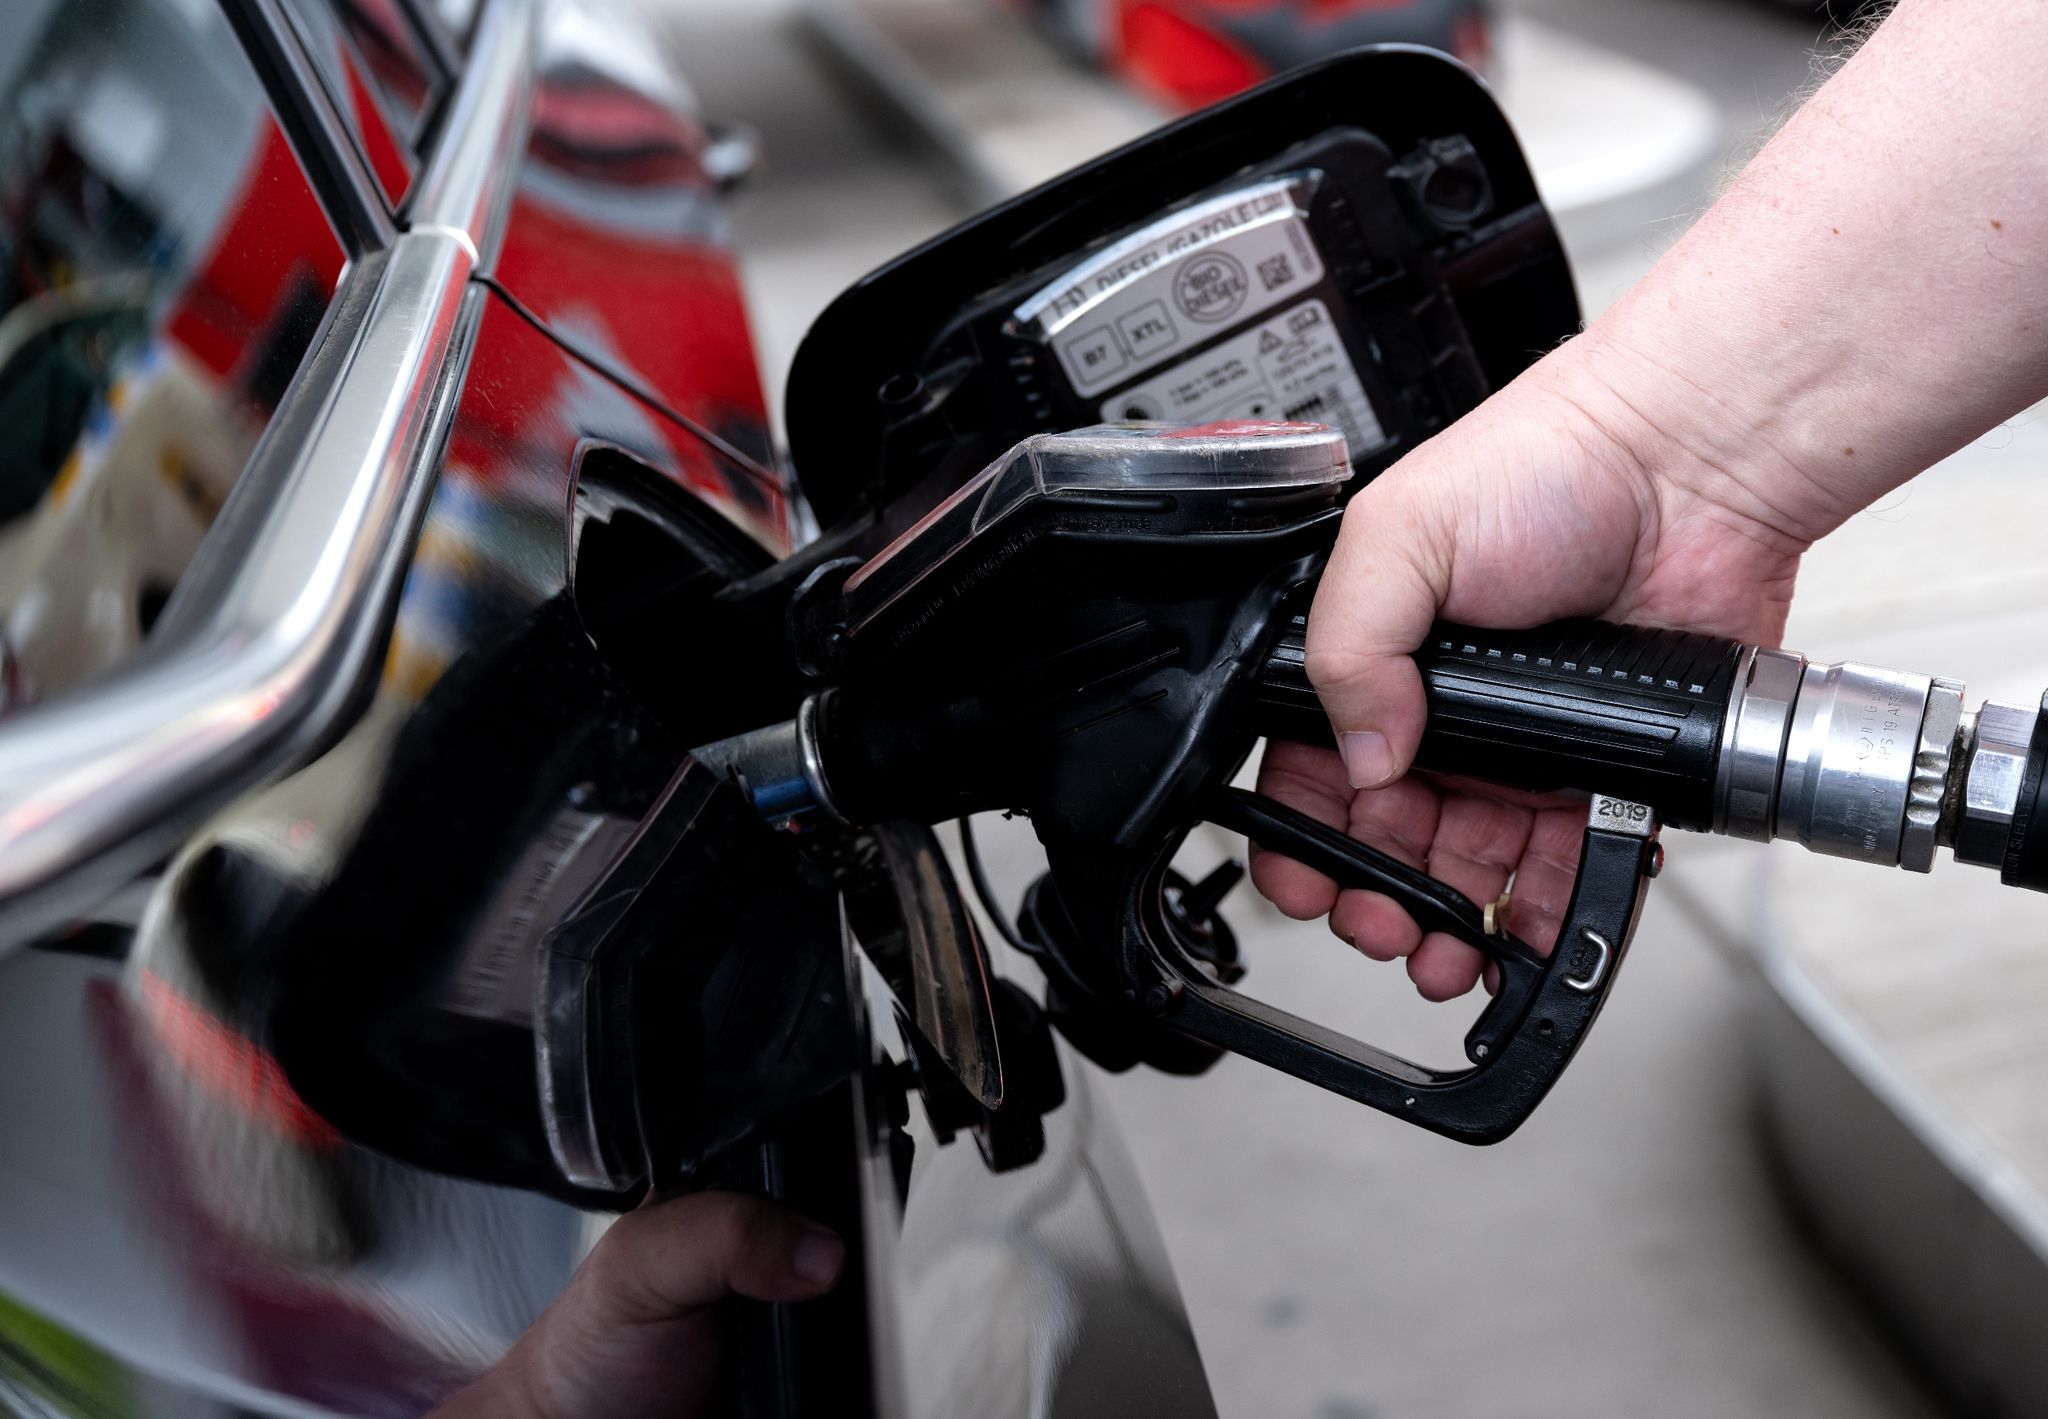 neuzulassungen: mehr benziner als e-autos in thüringen